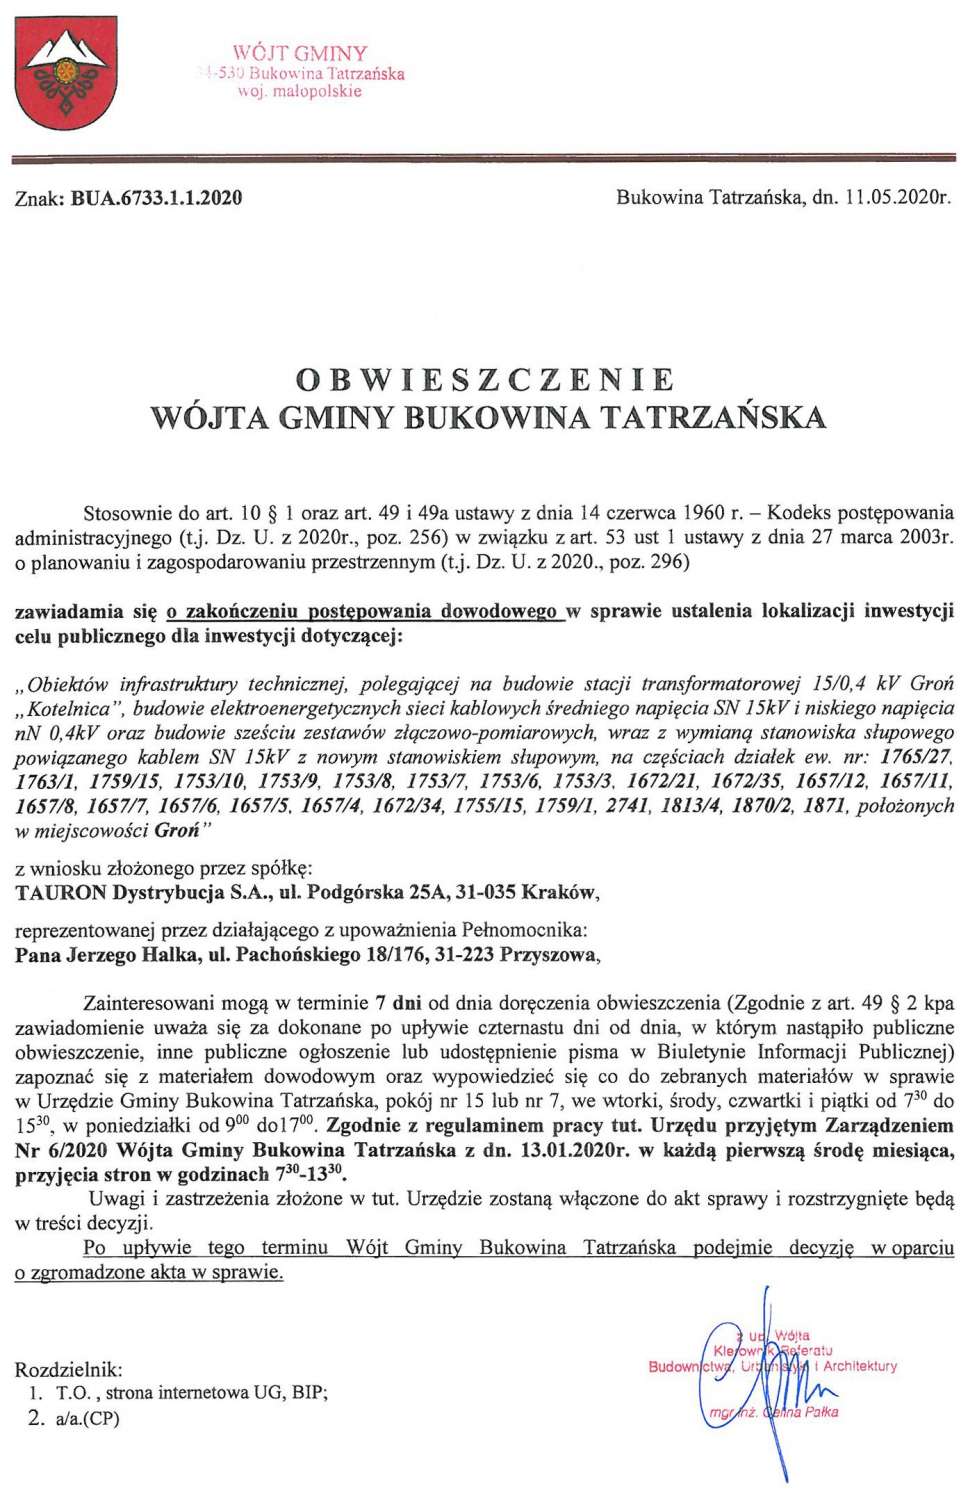 Obwieszczenie Wójta Gminy Bukowina Tatrzańska BUA 6733.1.1.2020